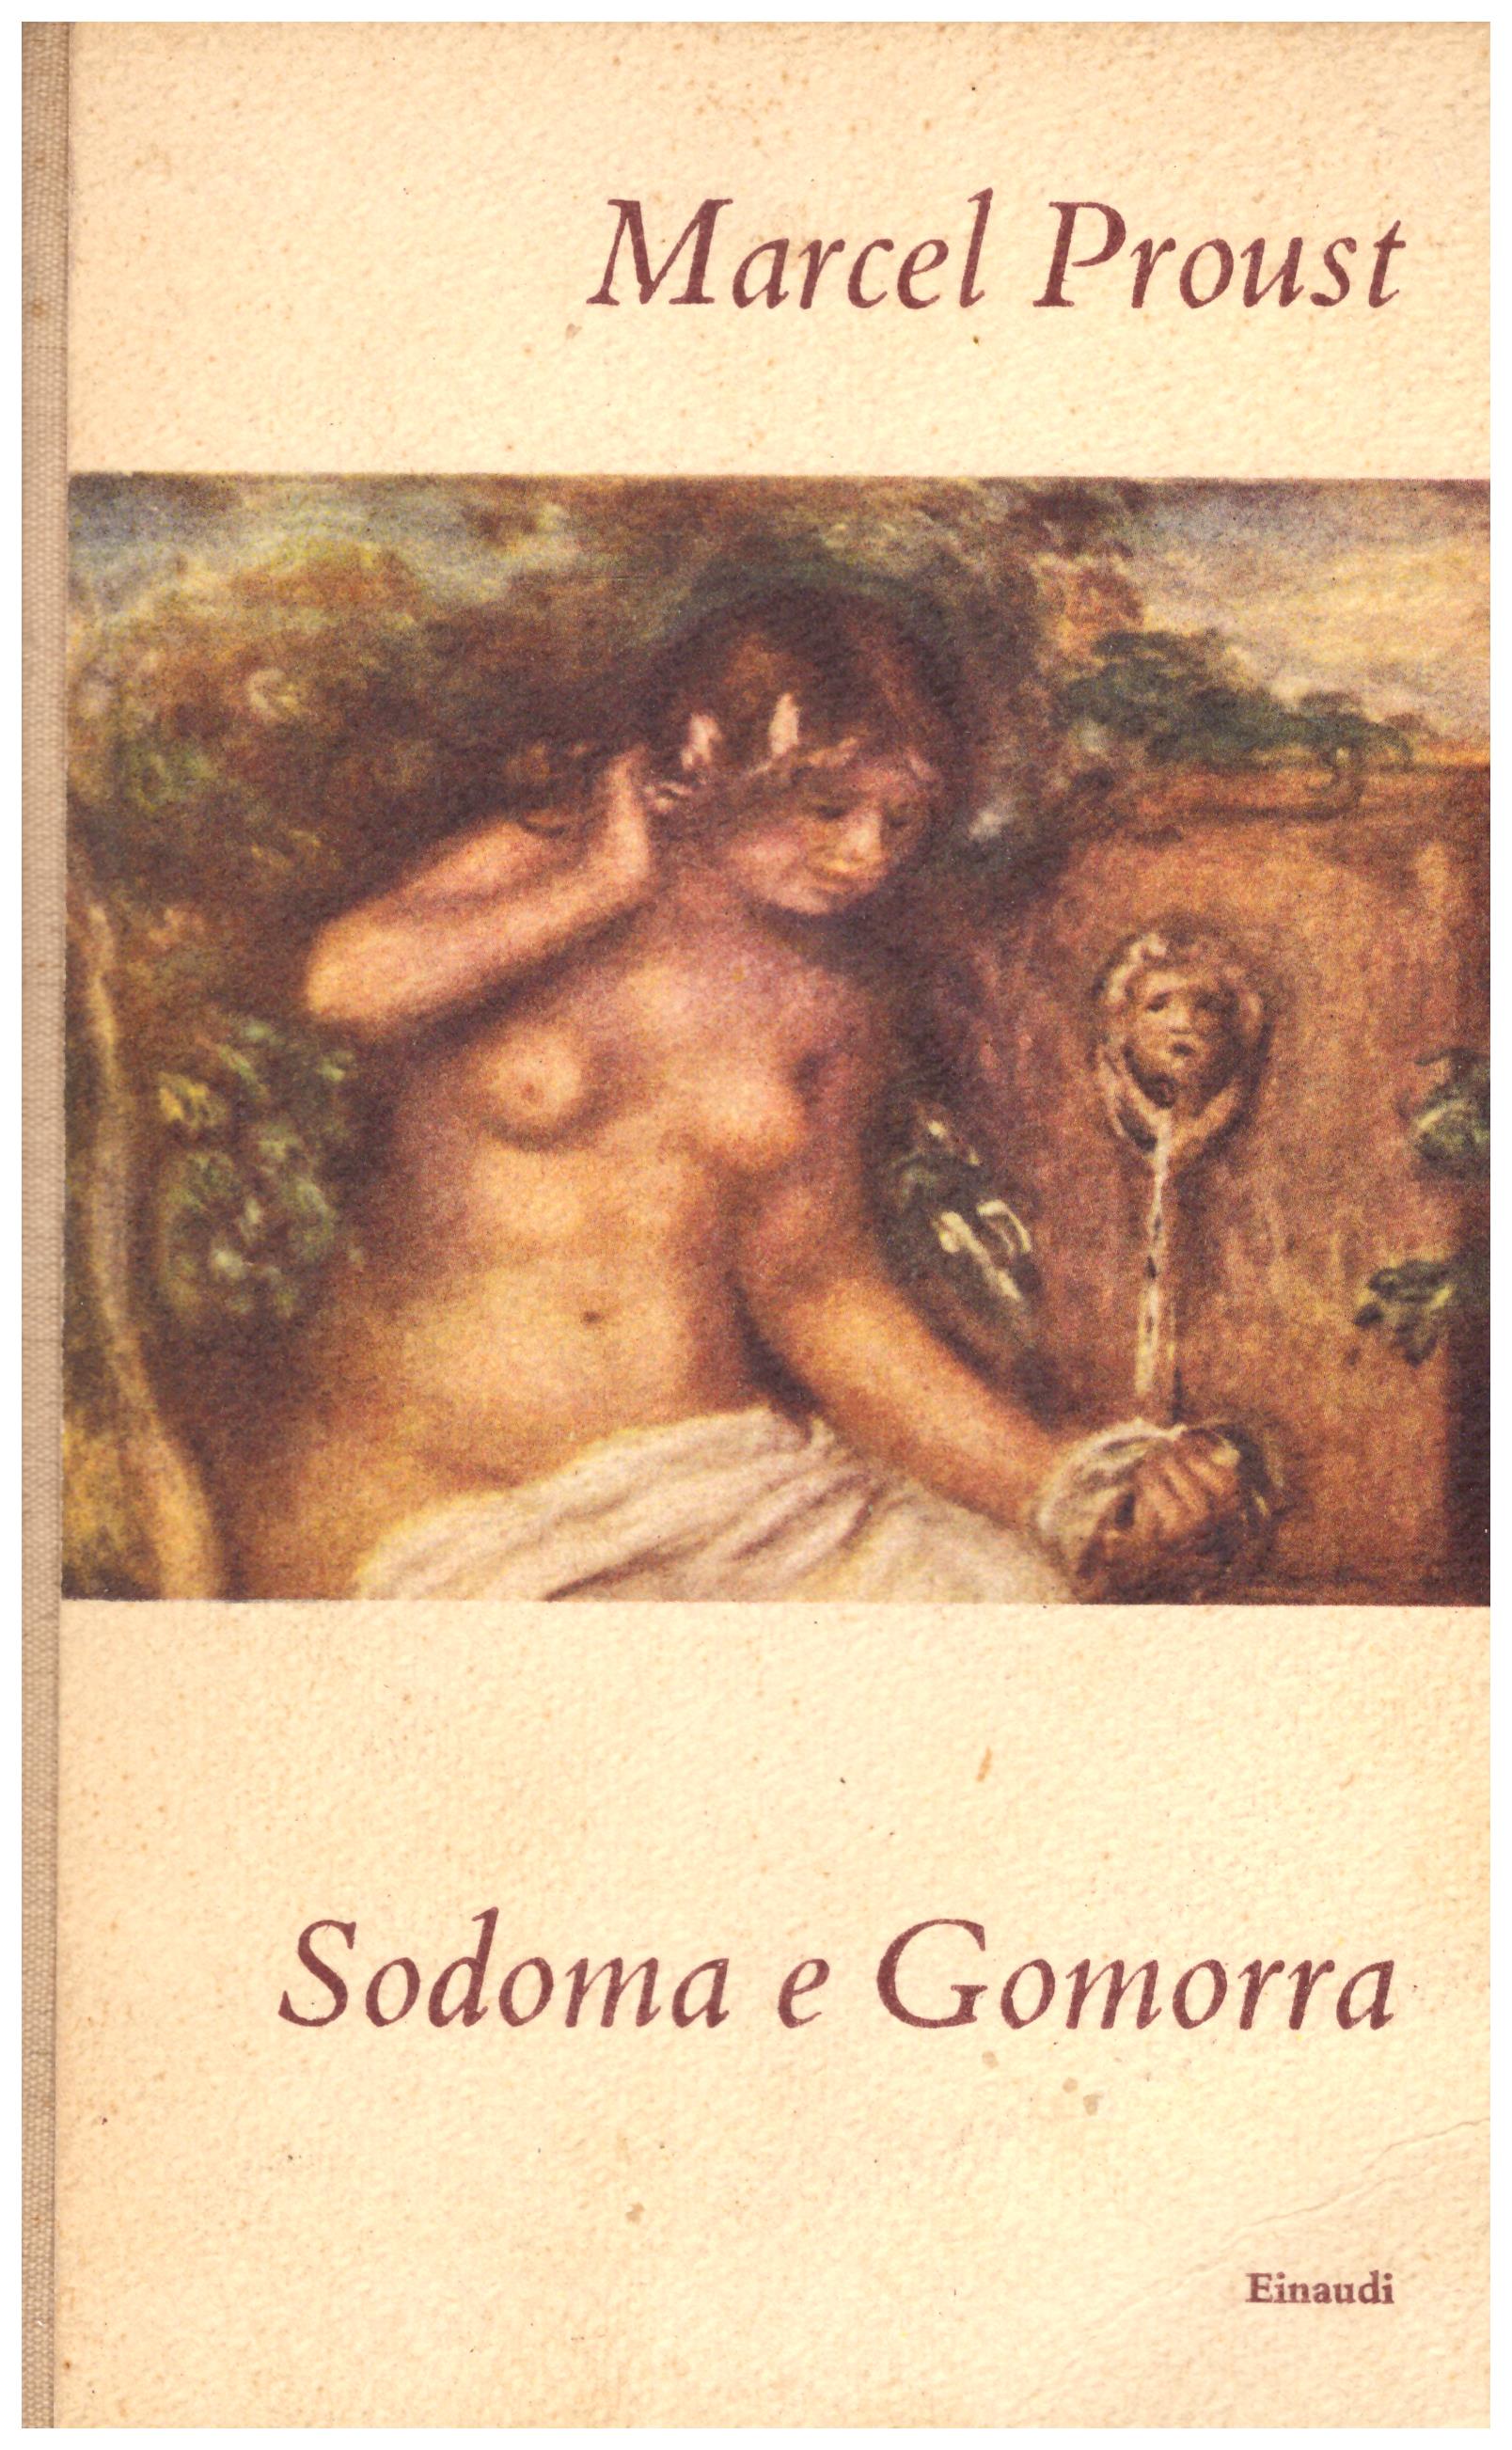 Titolo: Sodoma e Gomorra Autore: Marcel Proust Editore: Einaudi, 1950